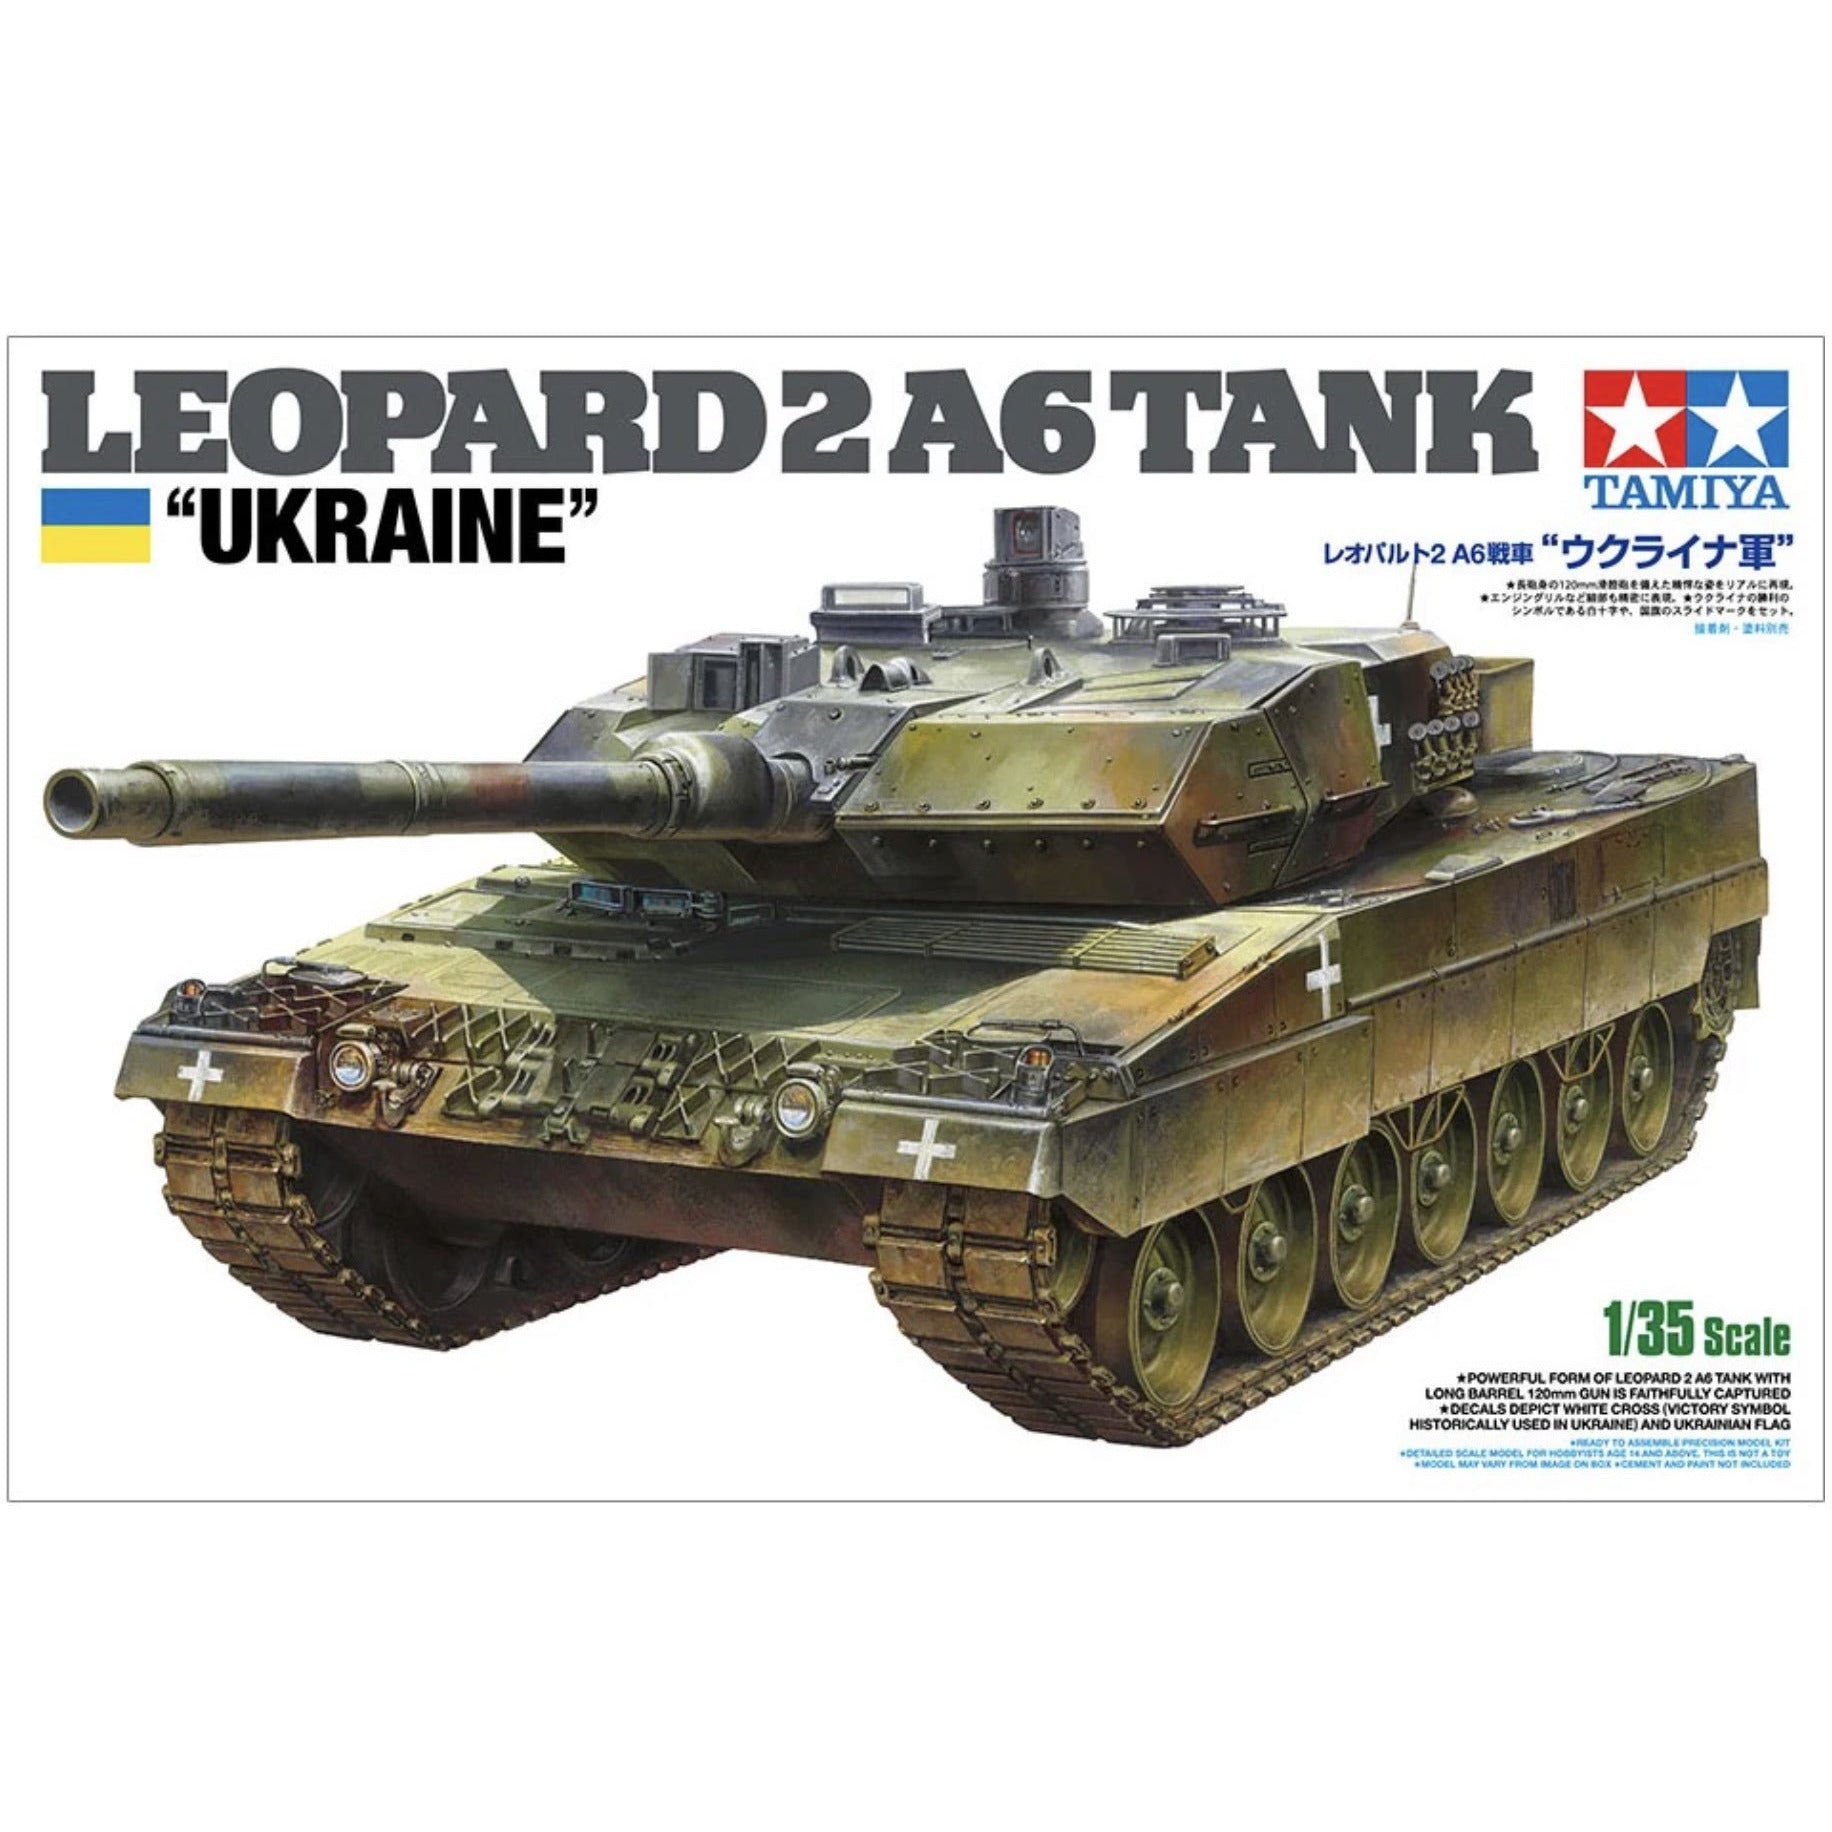 Leopard 2 A6 Ukraine 1/35 #25207 by Tamiya